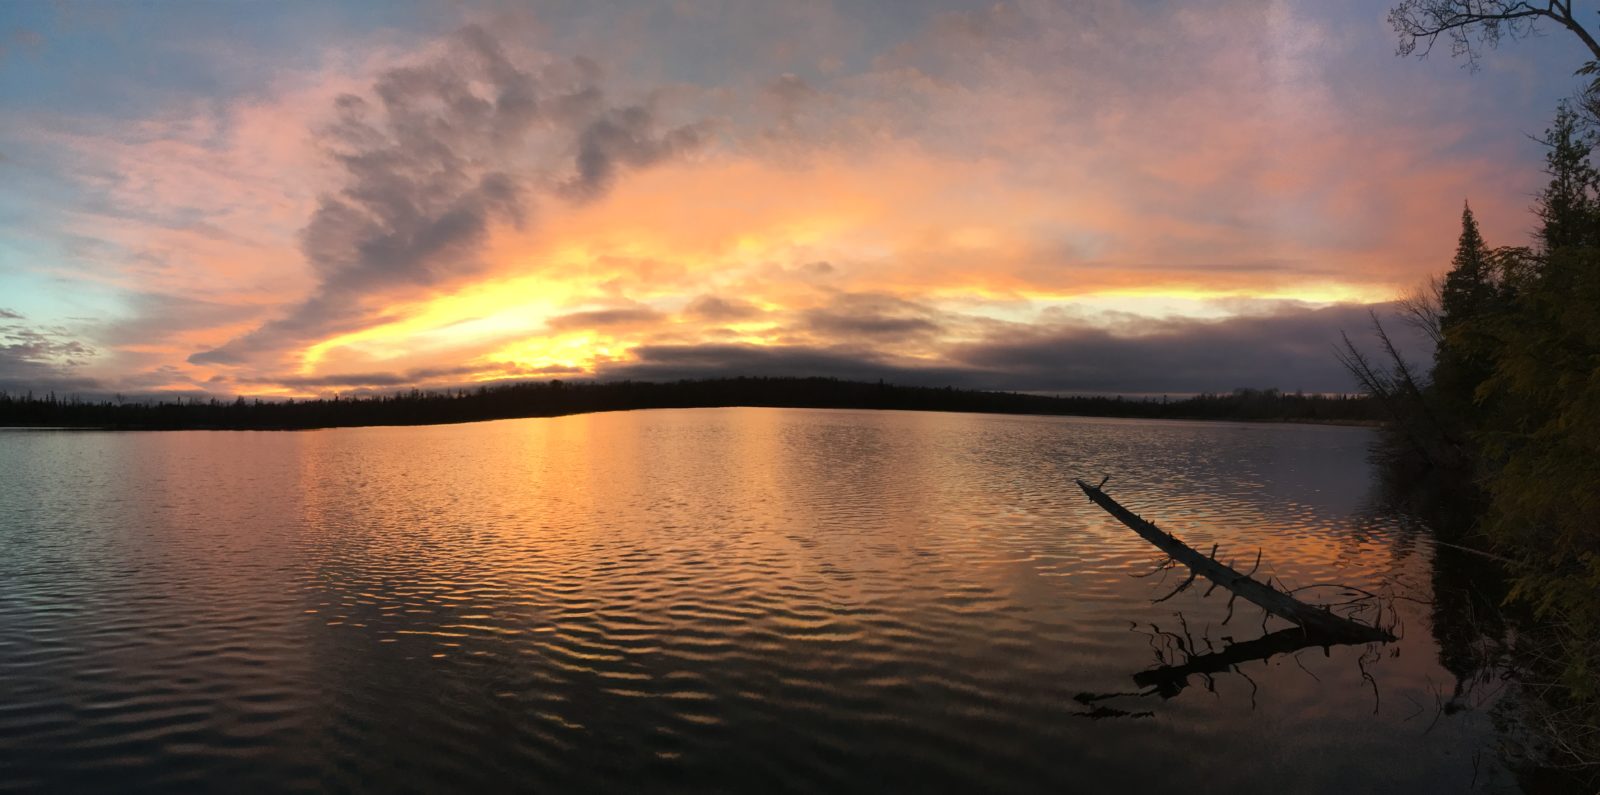 Moore Lake